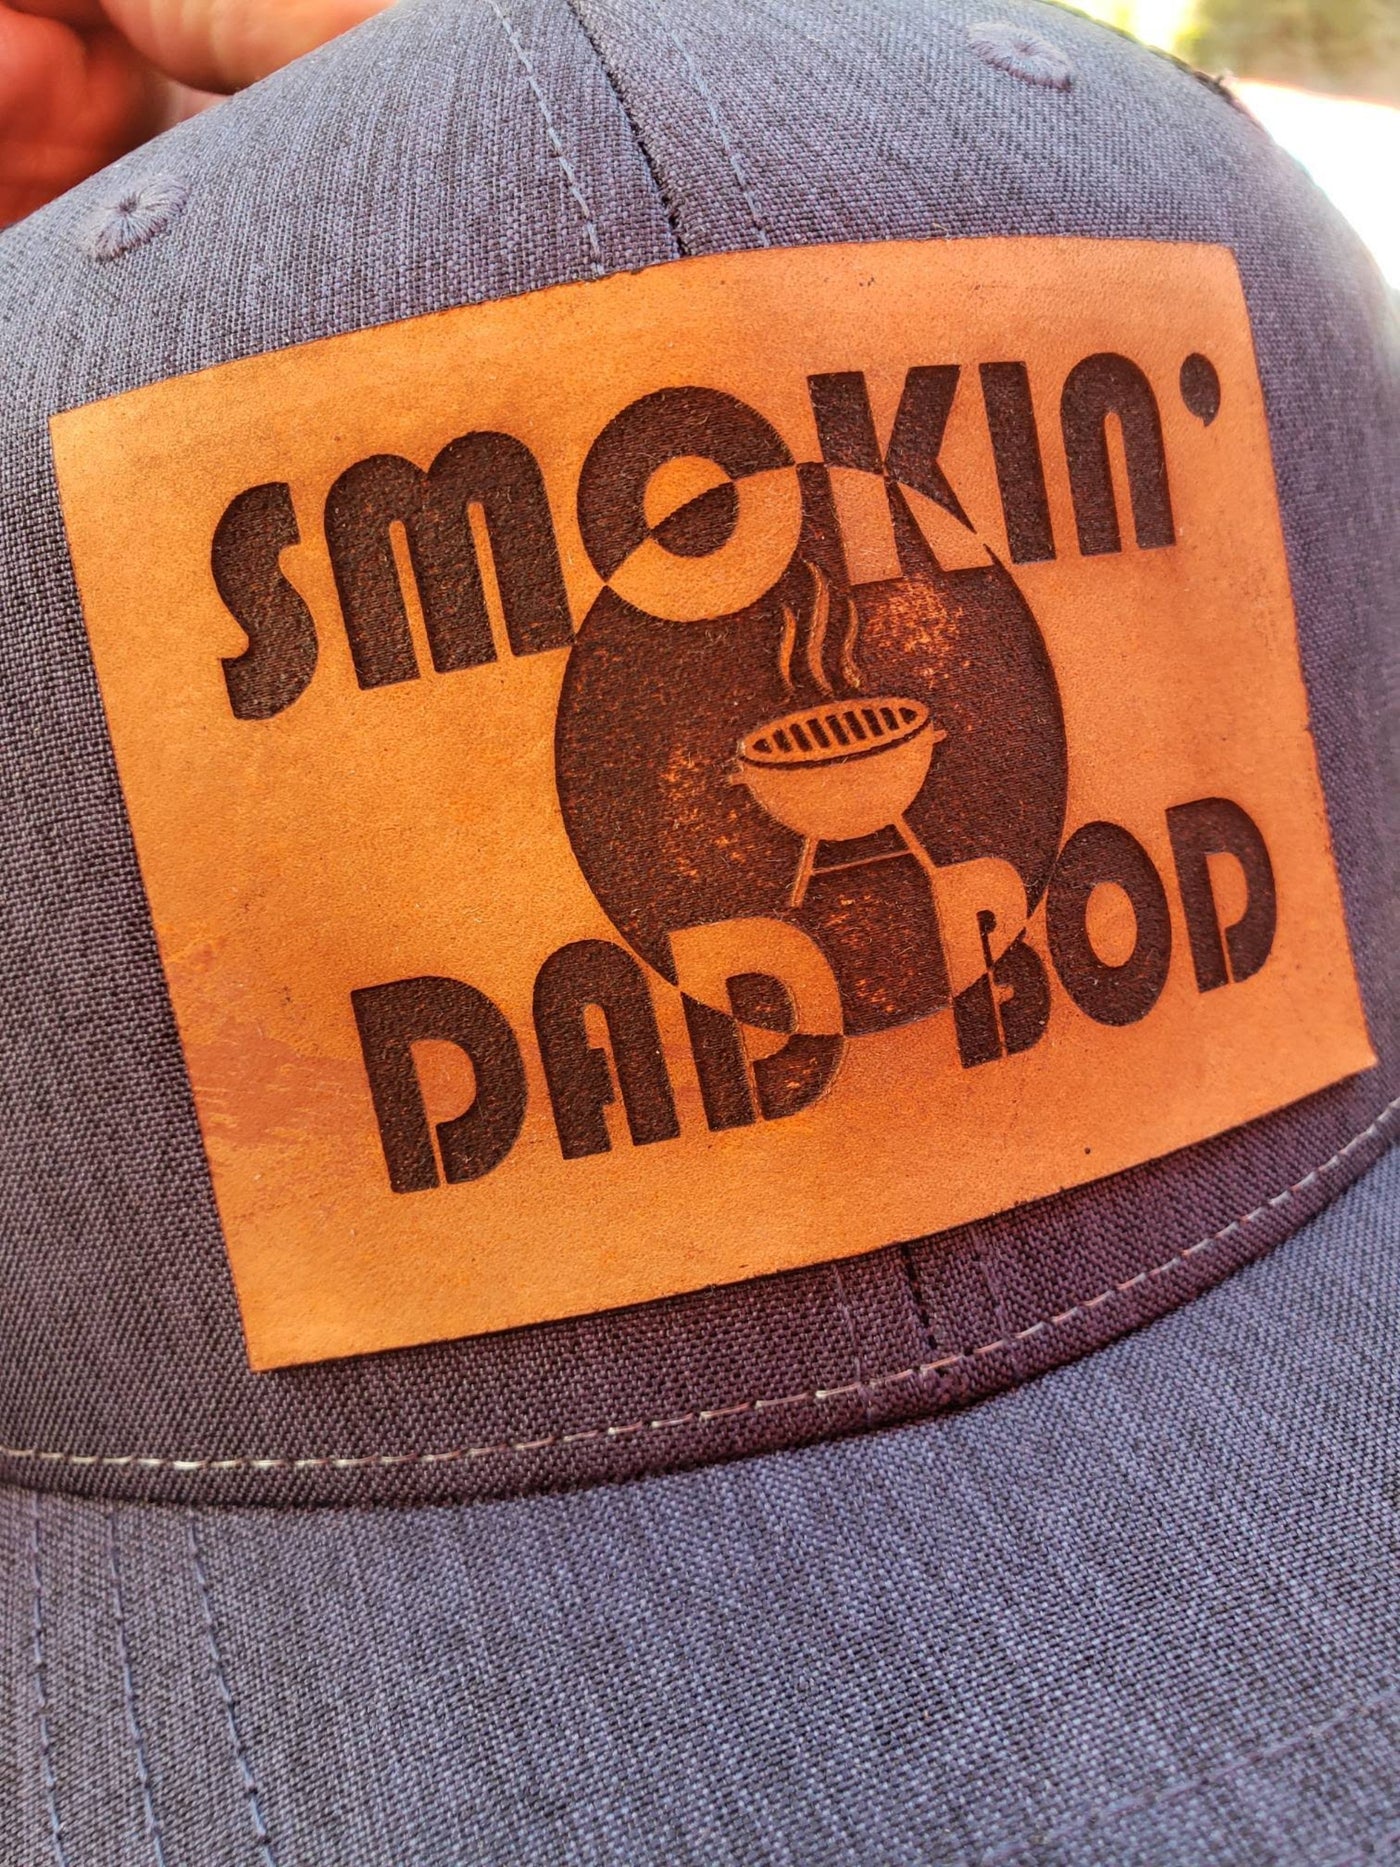 Smokin' Dad Bod Gift Set